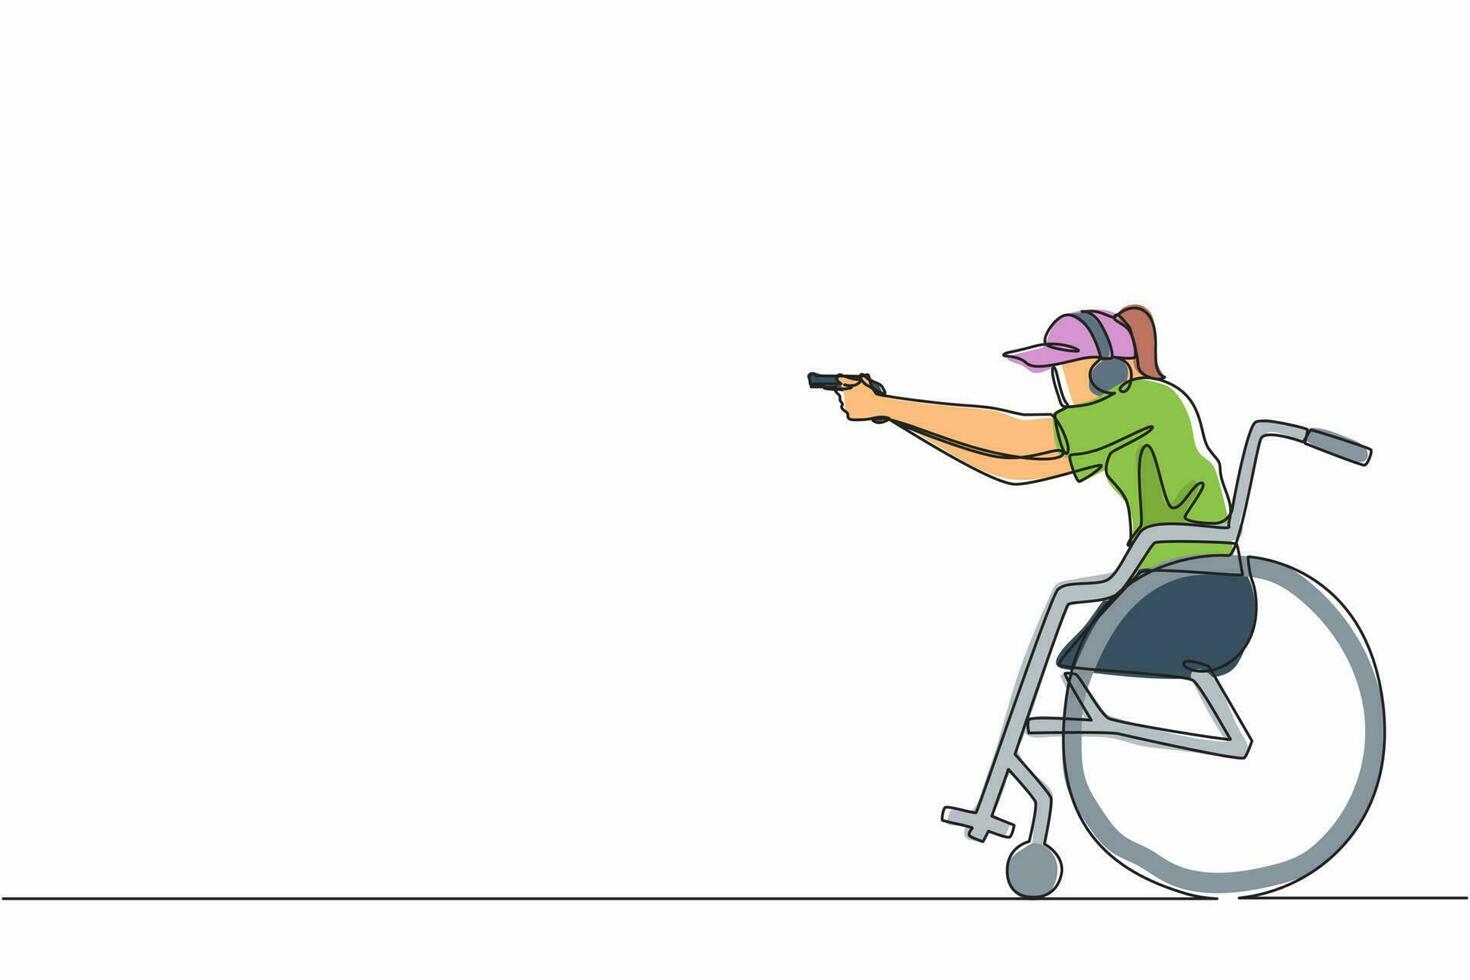 enda kontinuerlig linjeteckning ung idrottskvinna i rullstol engagerad i sportskytte med pistol. hobbyer och intressen för personer med funktionsnedsättning. en rad rita grafisk design vektorillustration vektor